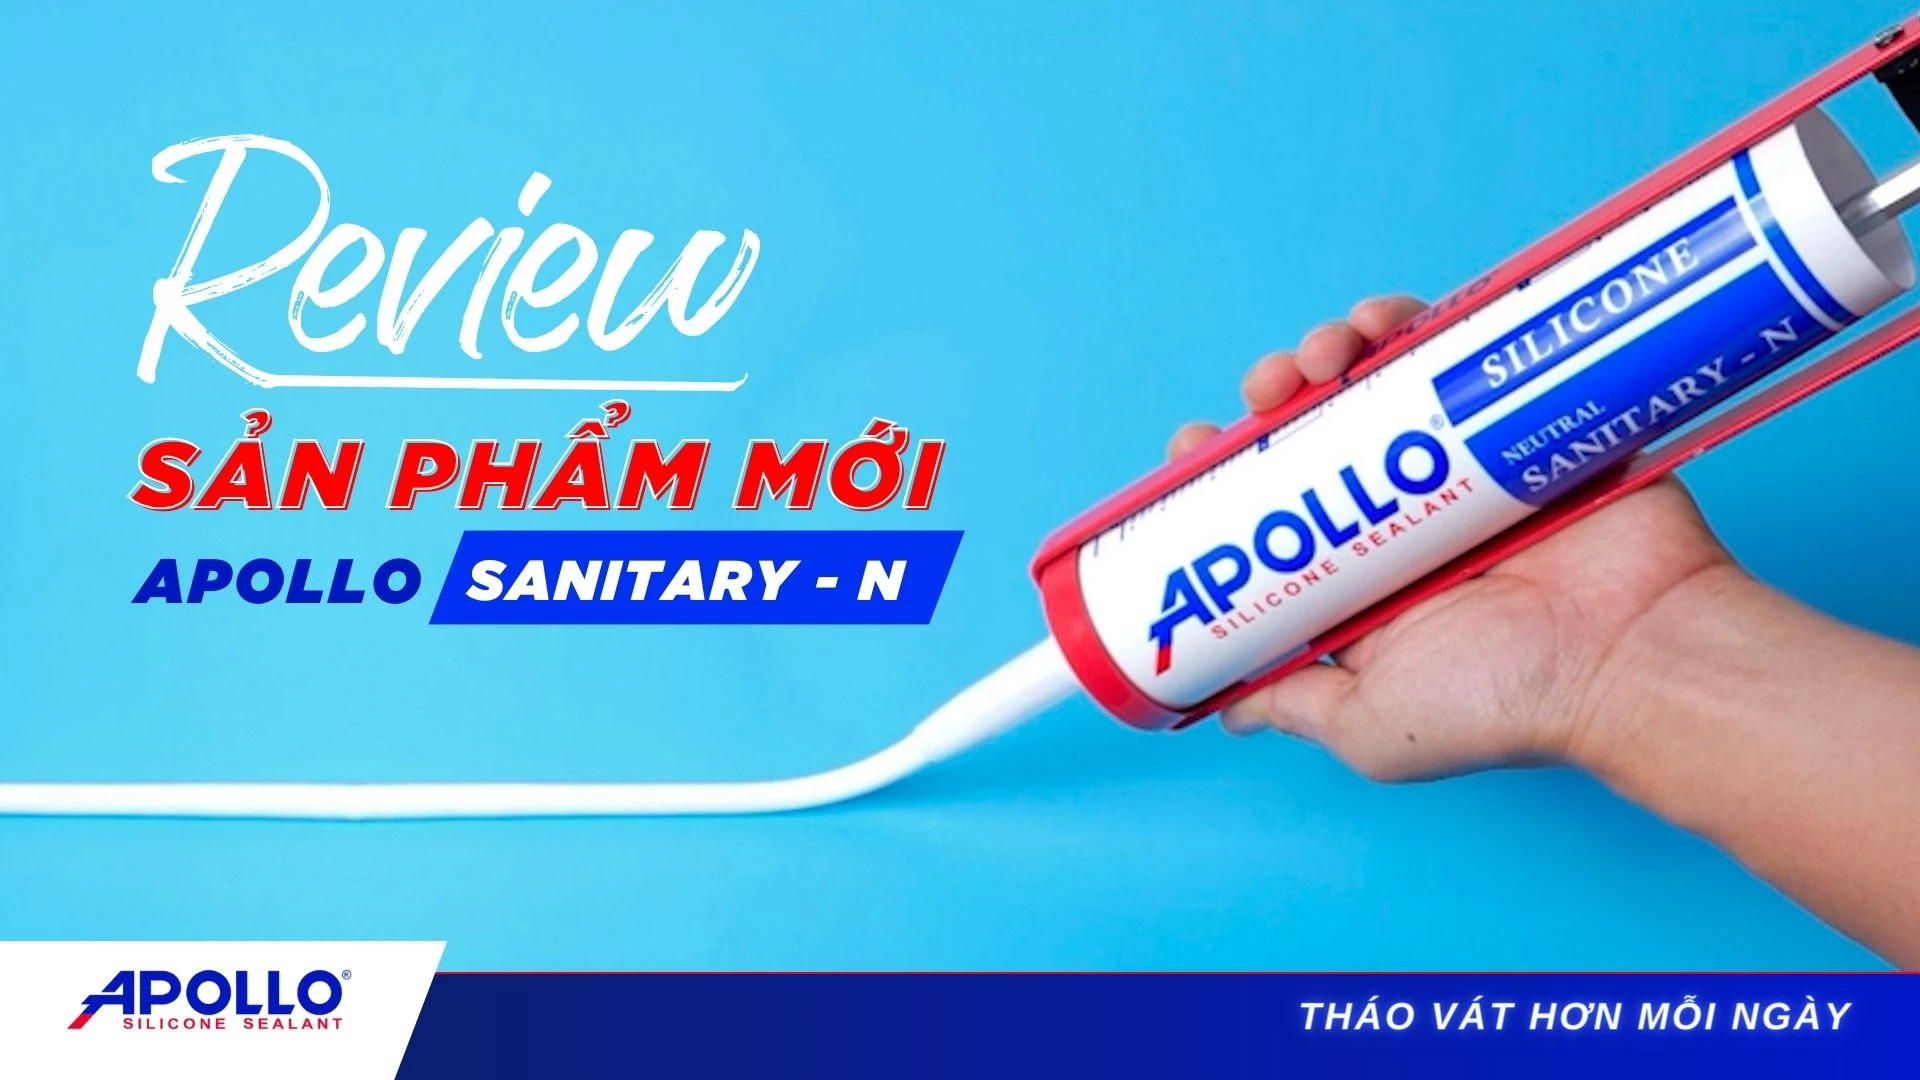 Apollo Silicone Sealant Sanitary - N - Giải pháp cho công trình cao cấp | Tháo vát hơn mỗi ngày